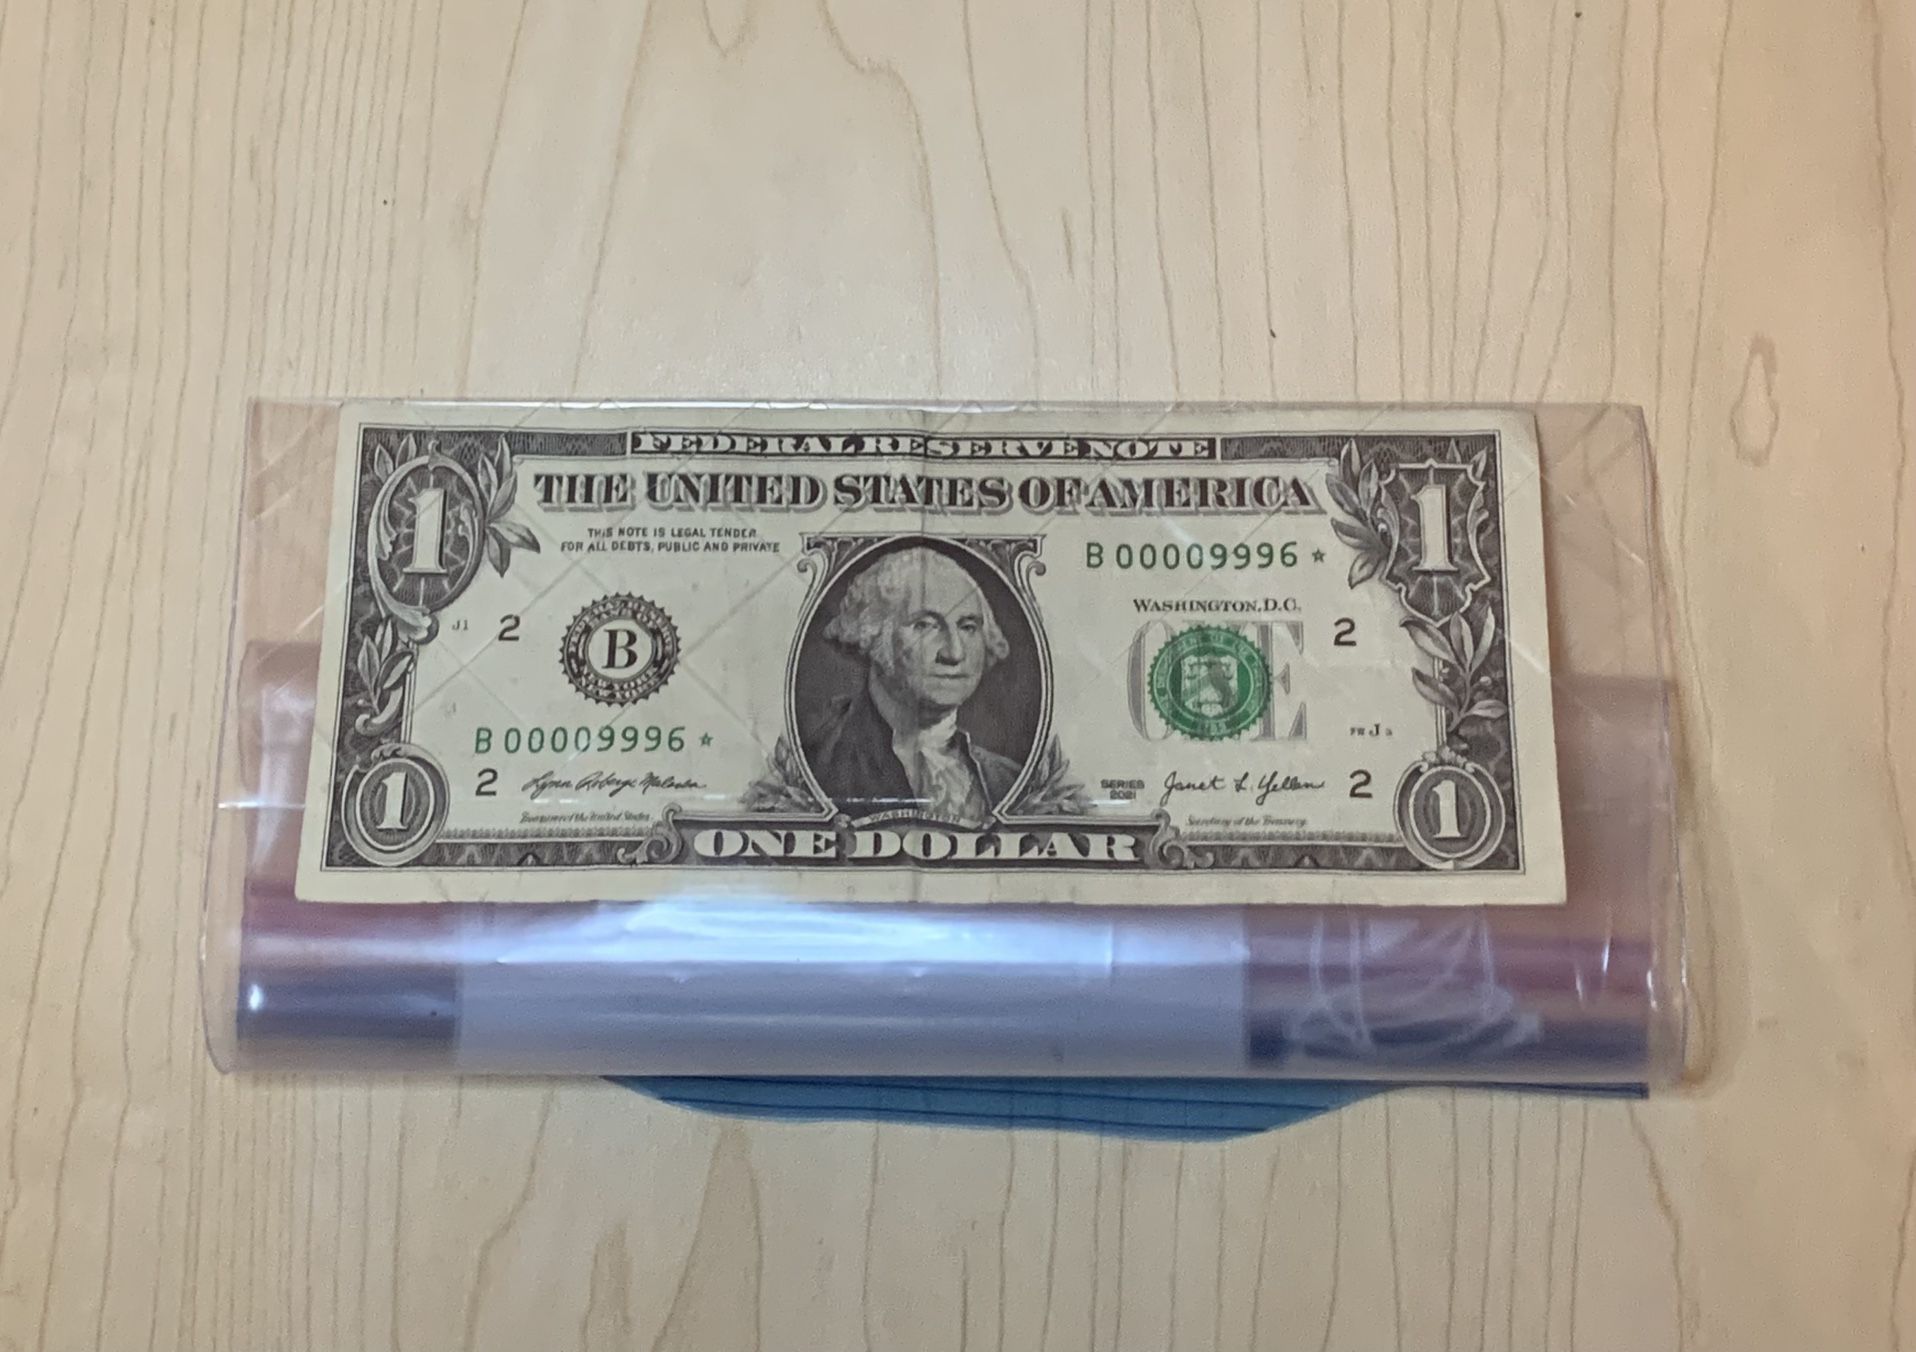 1$ Bill